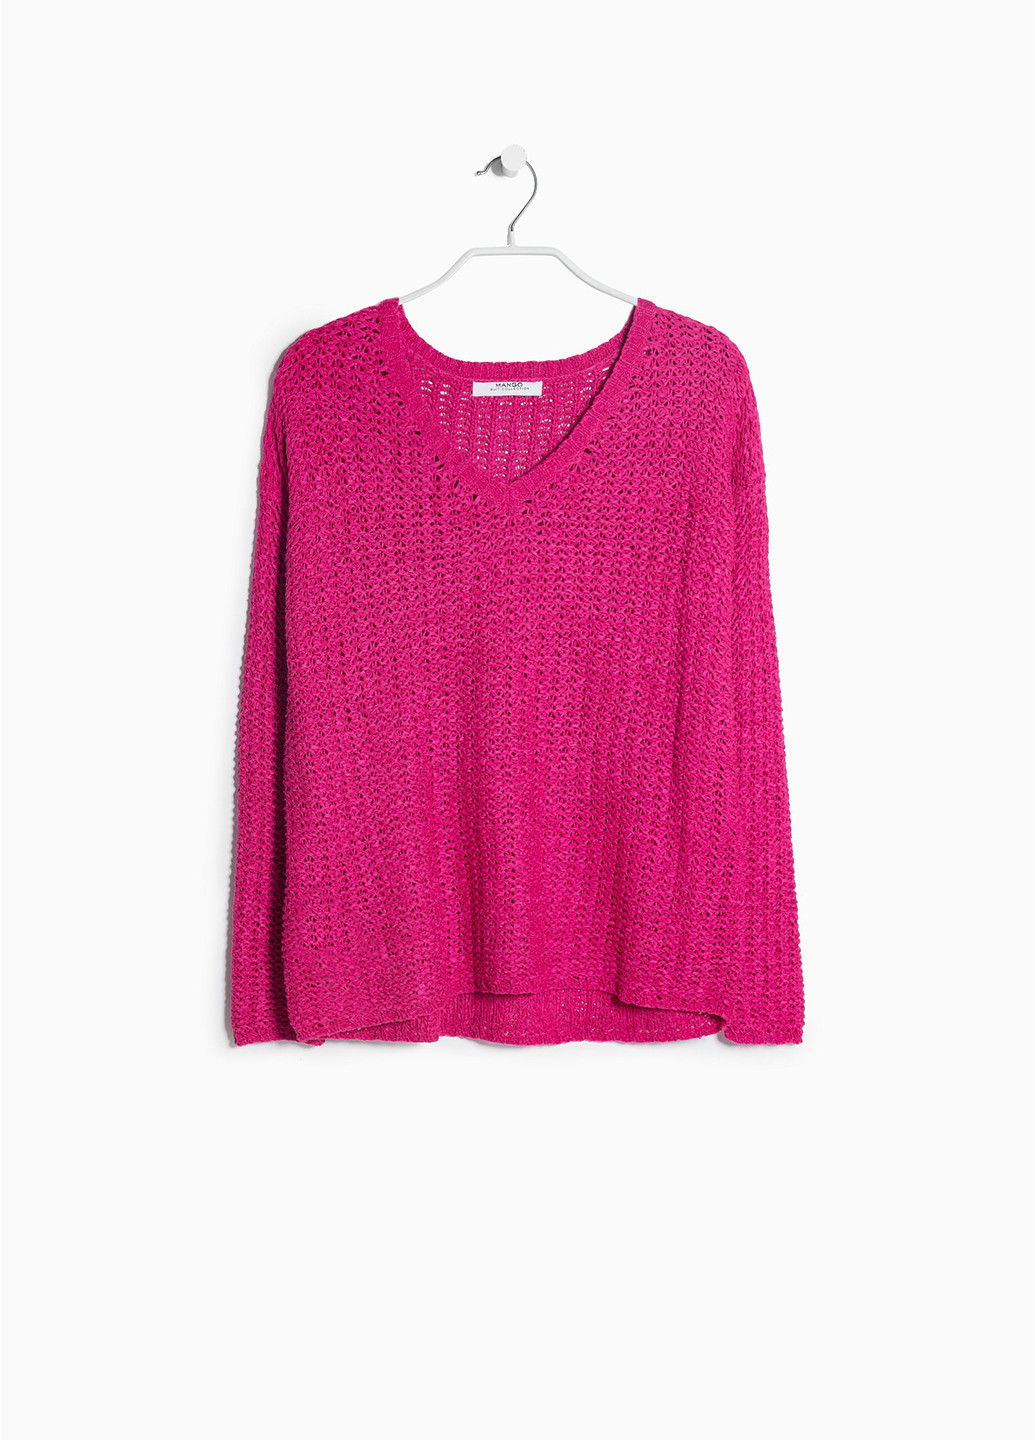 Фуксиновый демисезонный пуловер пуловер Mango